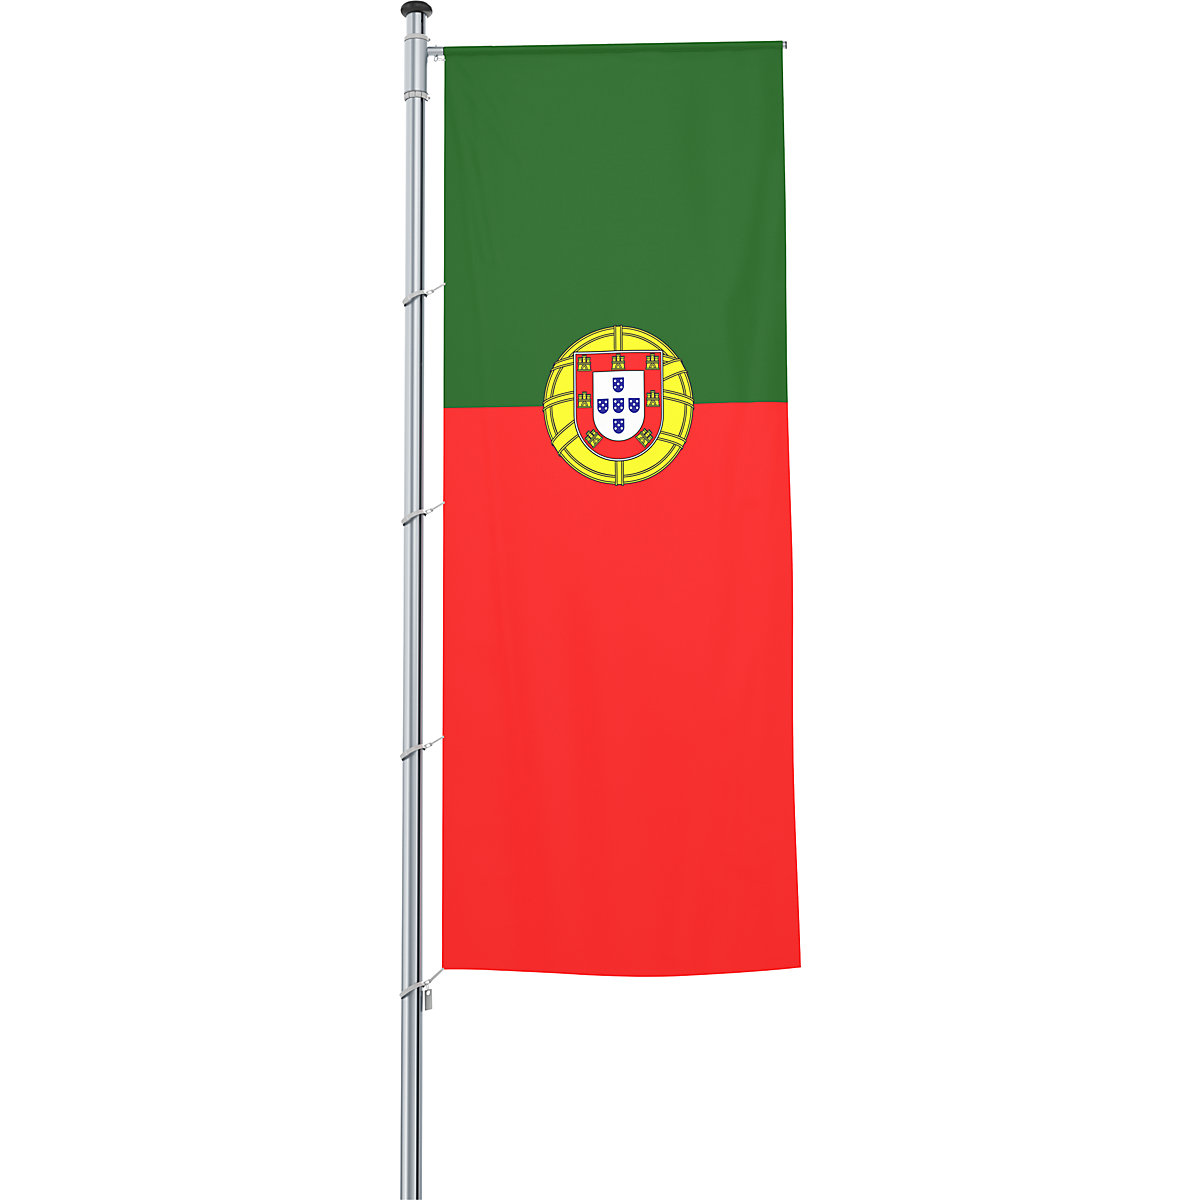 Mannus – Bandera con pluma/bandera del país, formato 1,2 x 3 m, Portugal